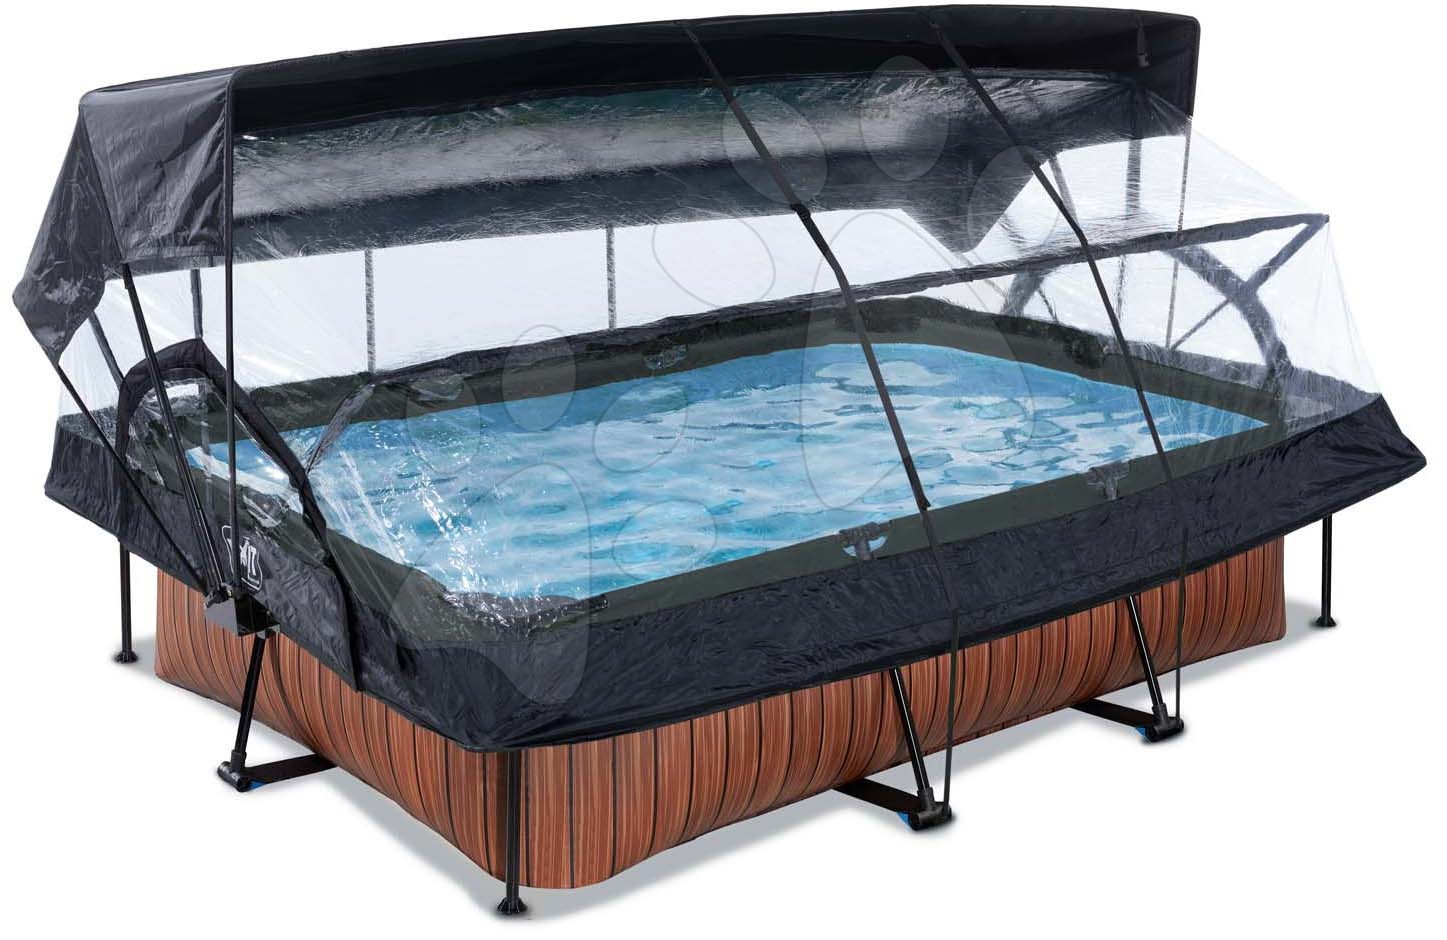 Bazén so strieškou krytom a filtráciou Wood pool Exit Toys oceľová konštrukcia 220*150*65 cm hnedý od 6 rokov